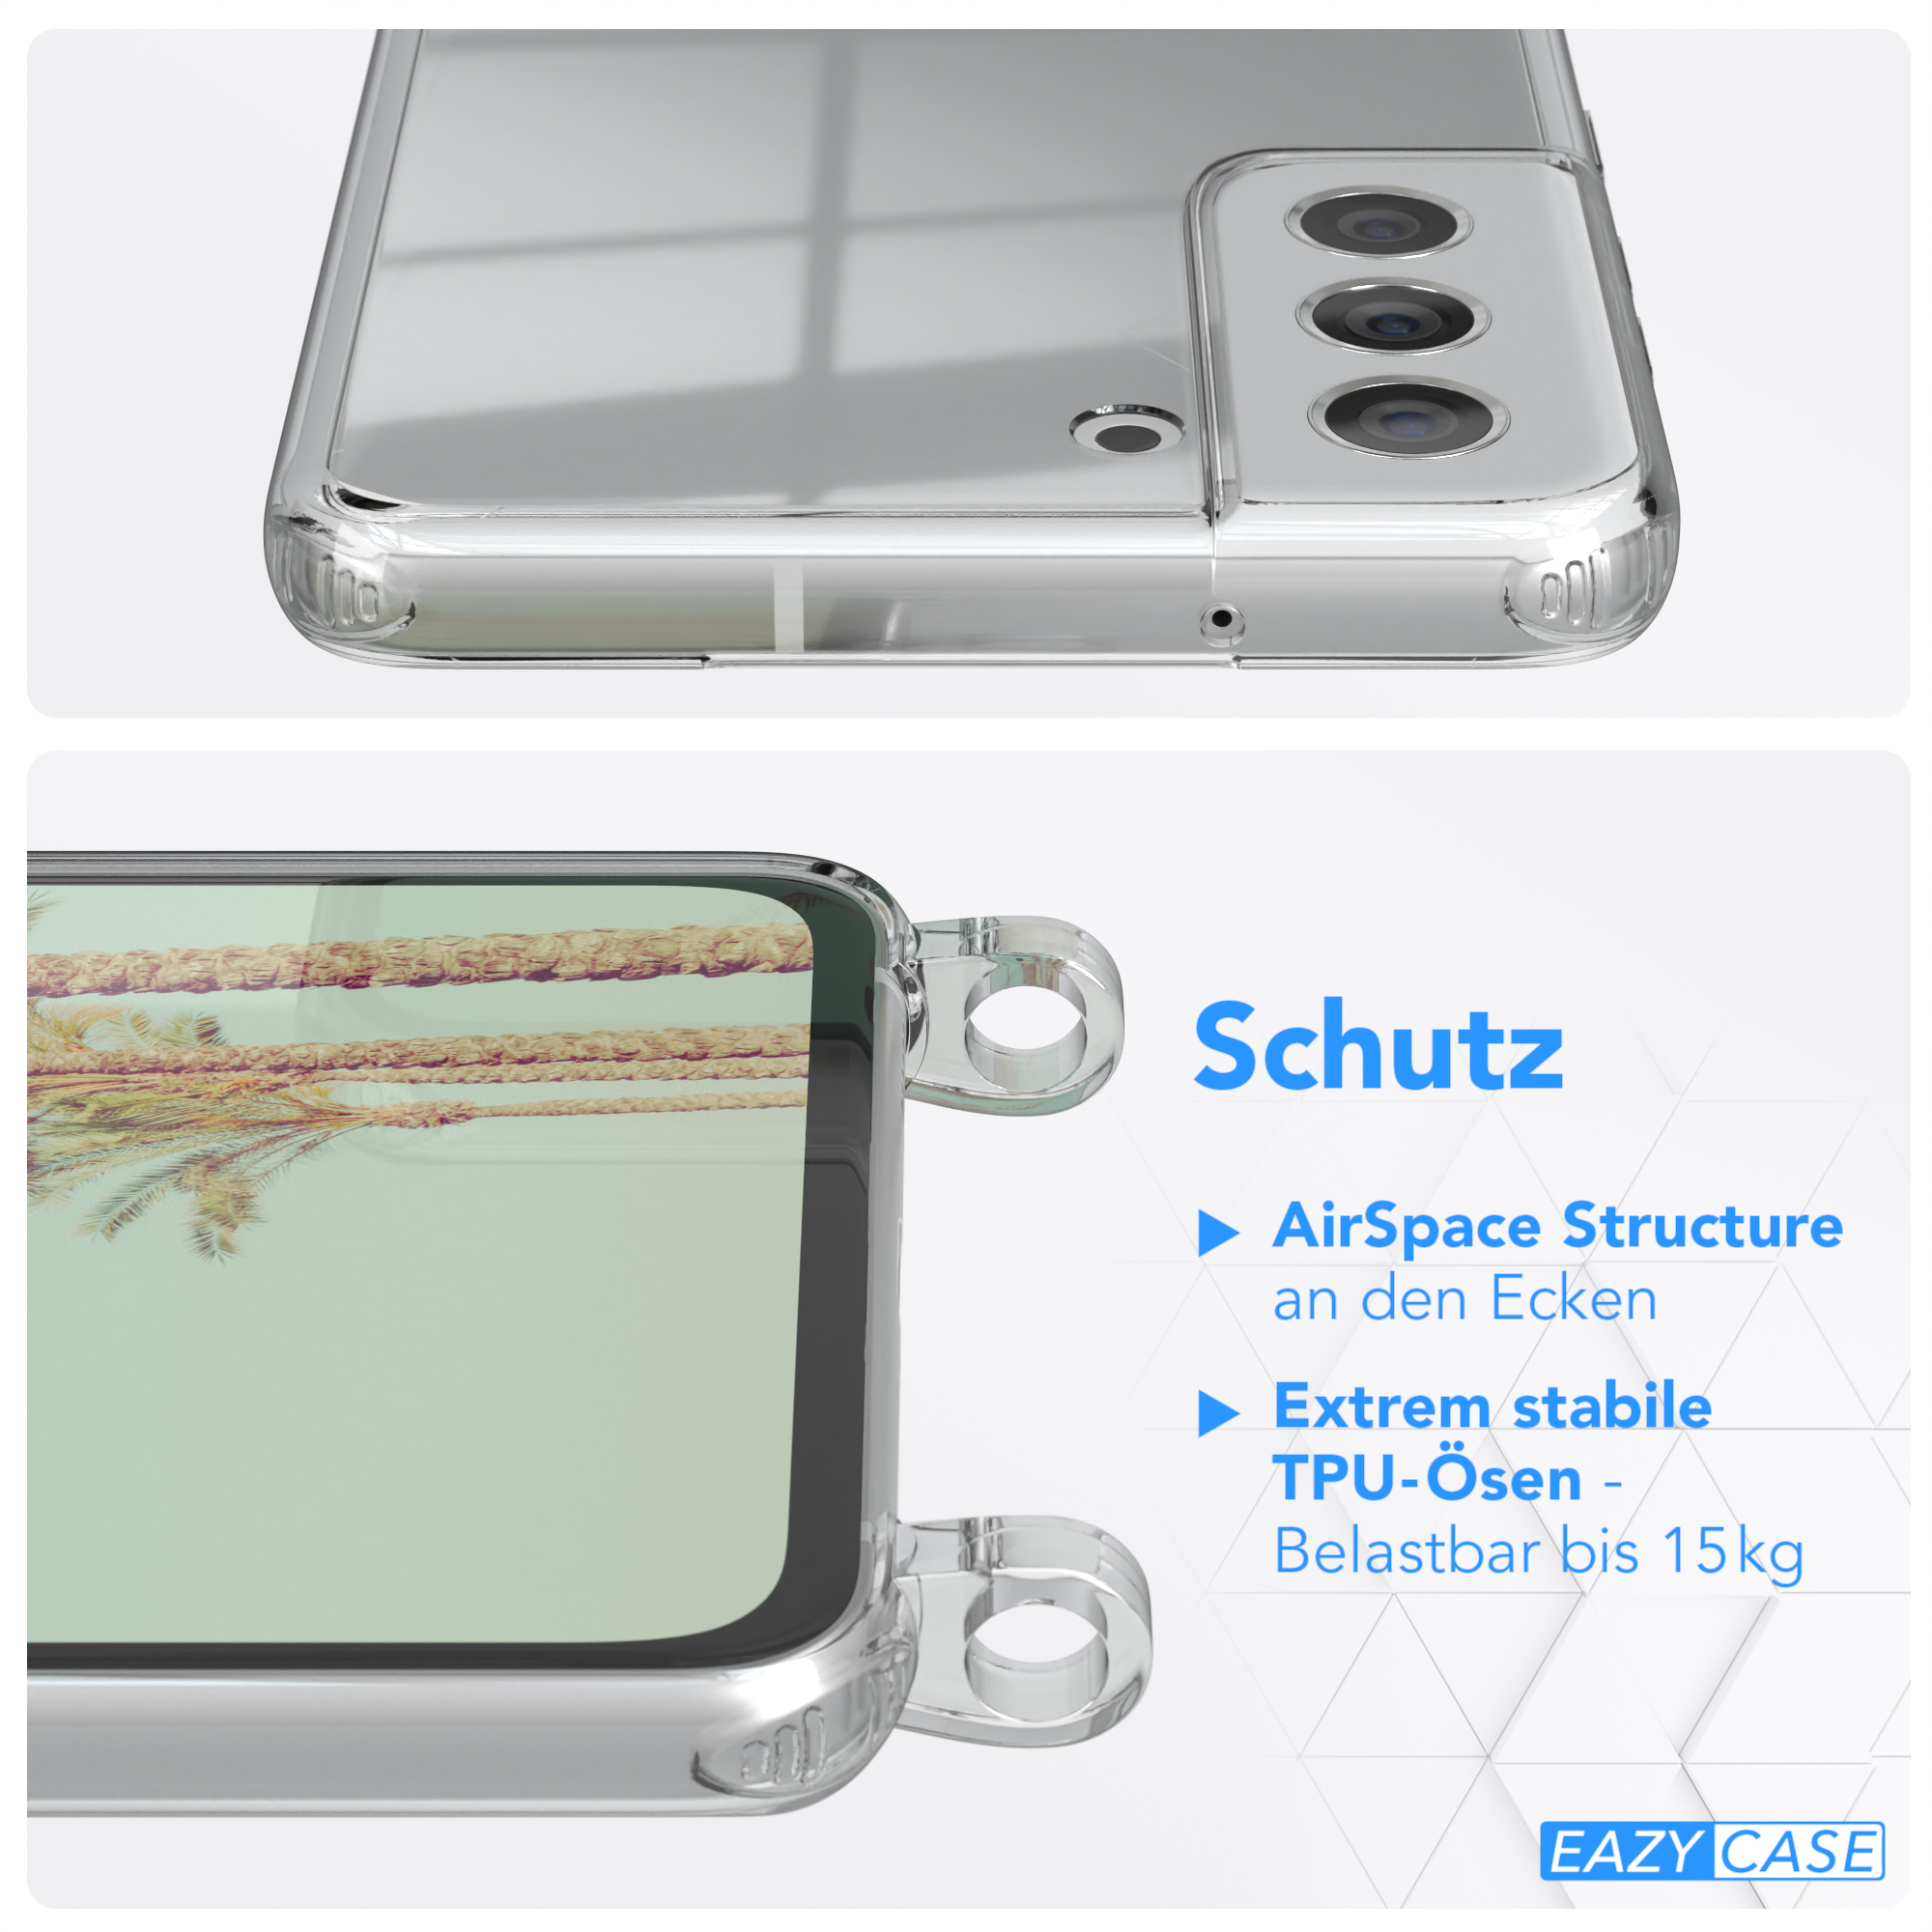 EAZY Galaxy 5G, Weiß Samsung, Umhängetasche, S21 Grün Clear Umhängeband, CASE FE Cover mit